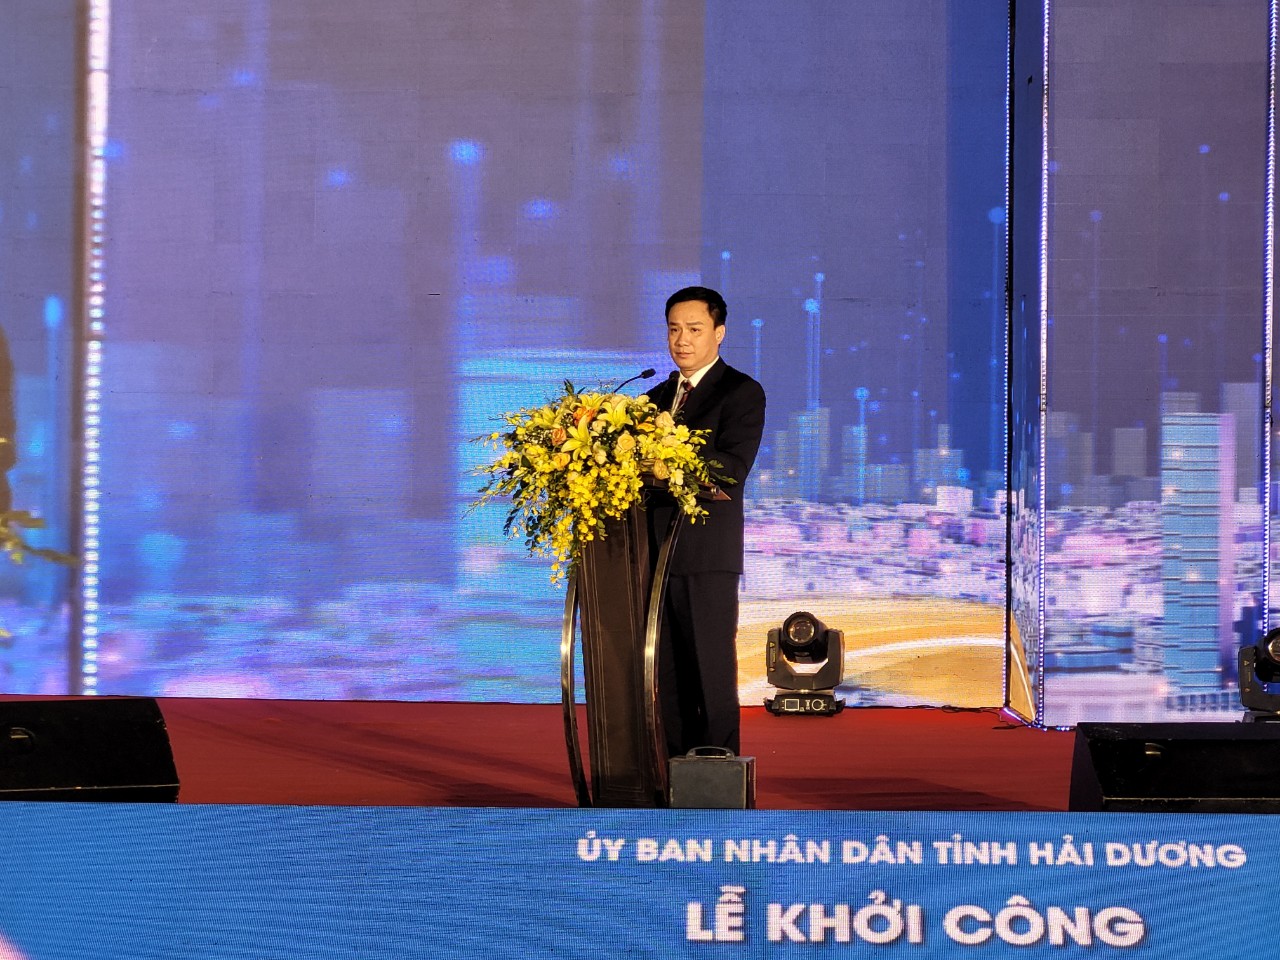 Ông Triệu Thế Hùng, Chủ tịch UBND tỉnh Hải Dương phát biểu tại buổi lễ khởi công. Ảnh: Thanh Sơn